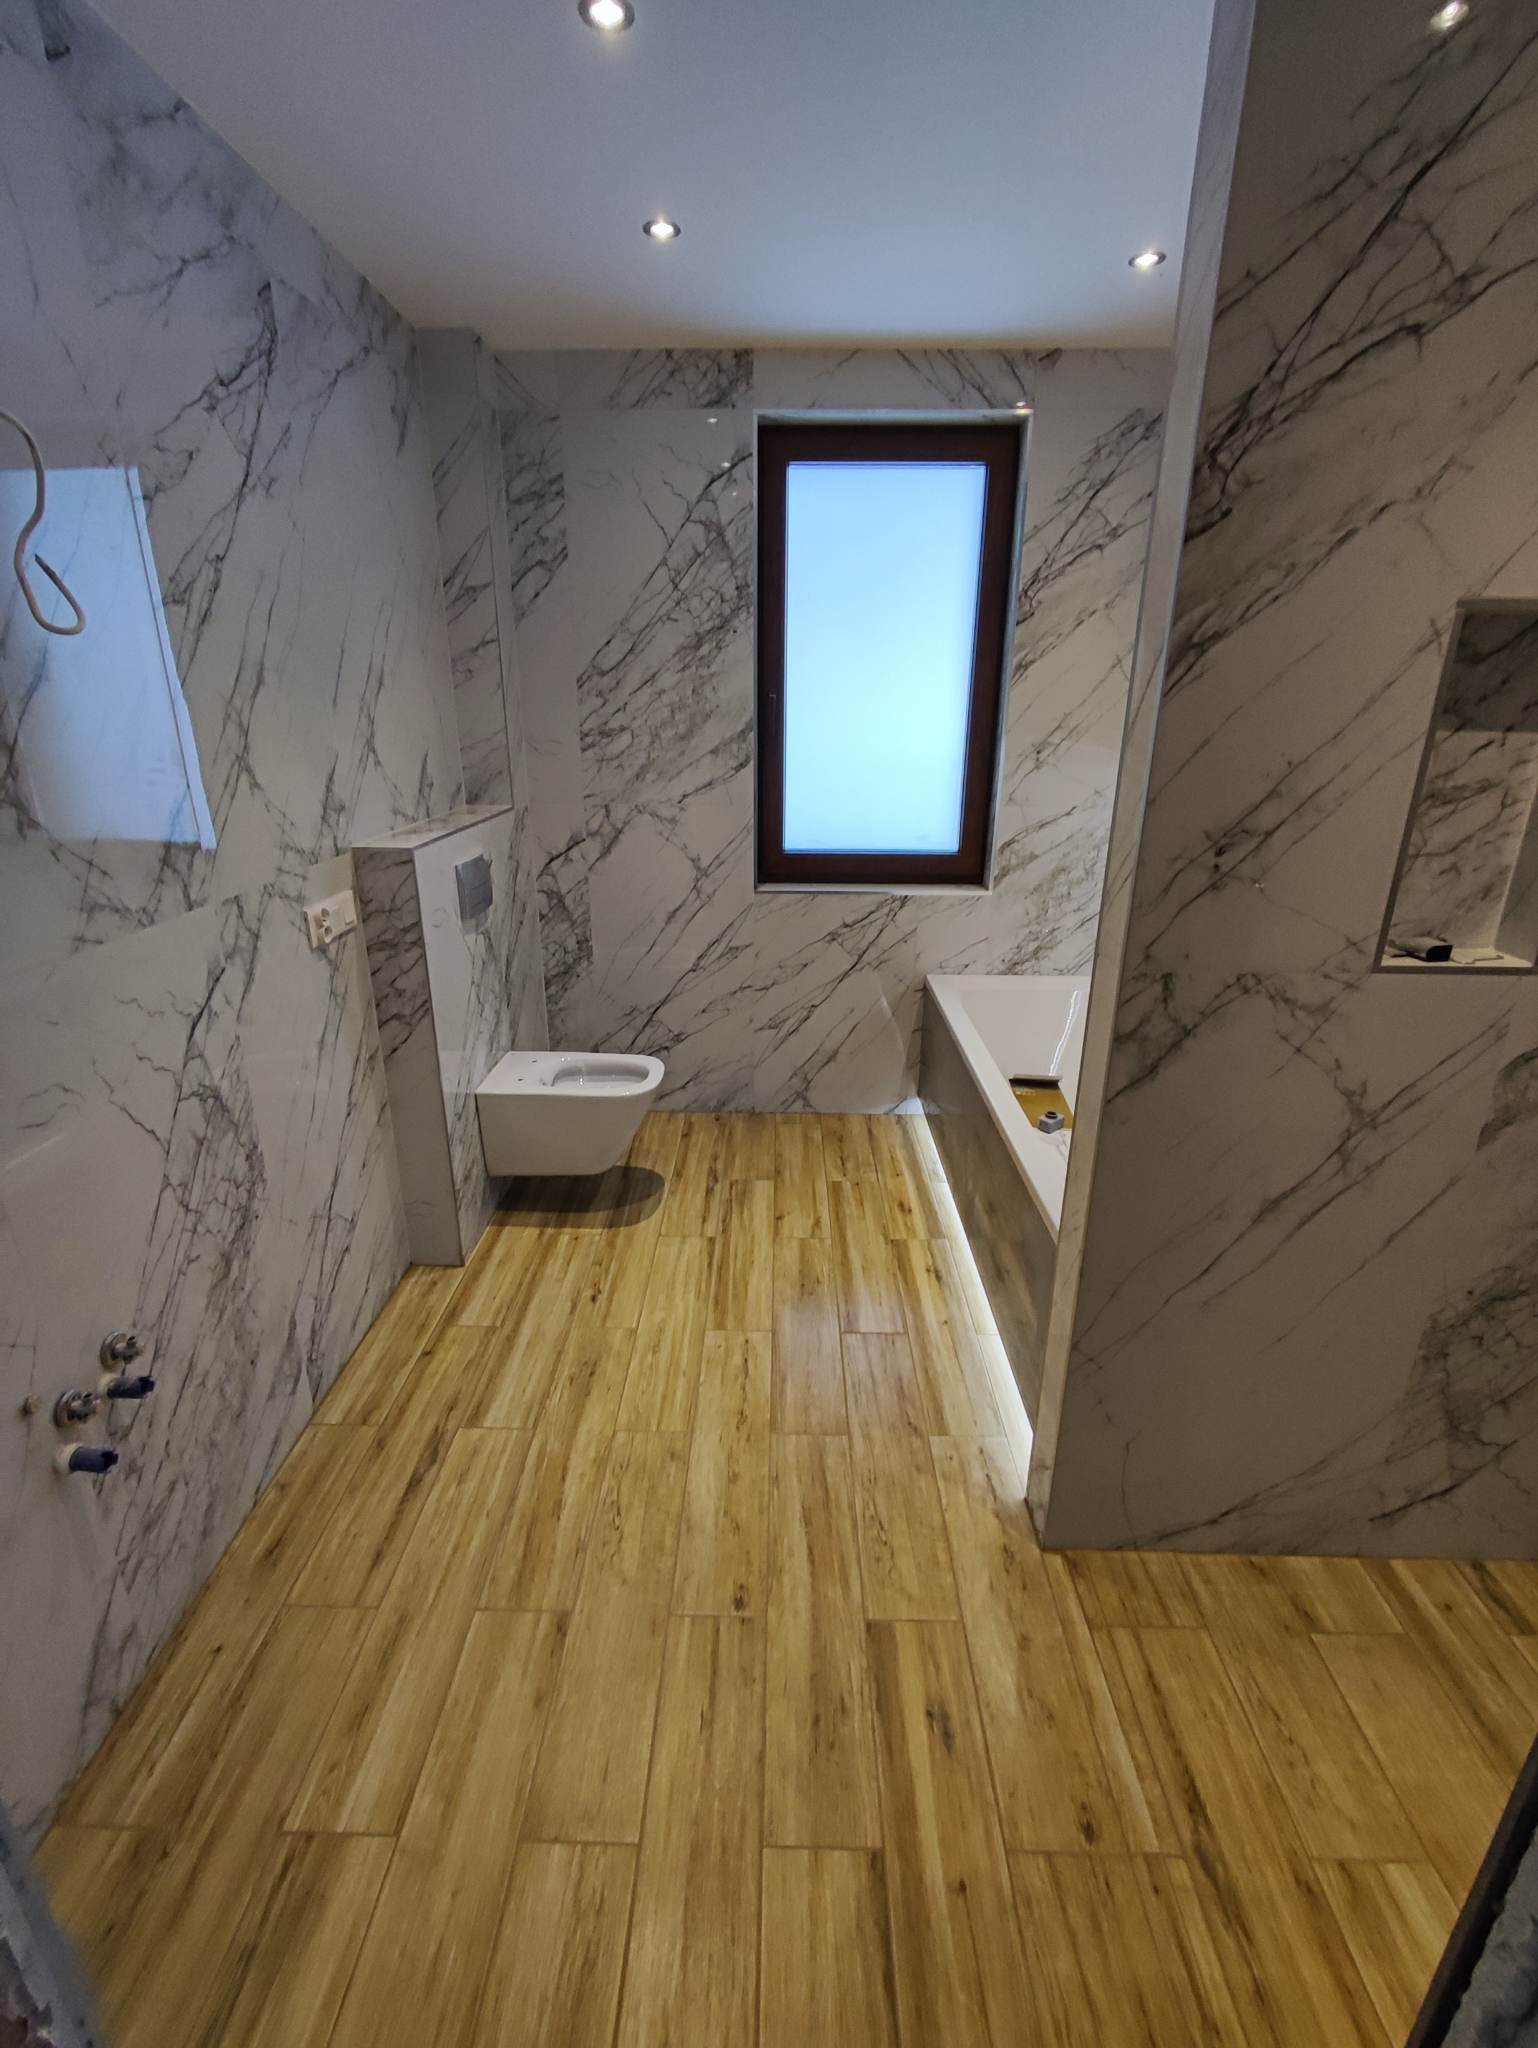 Łazienka w stylu biały marmur oraz panele drewnopodbne